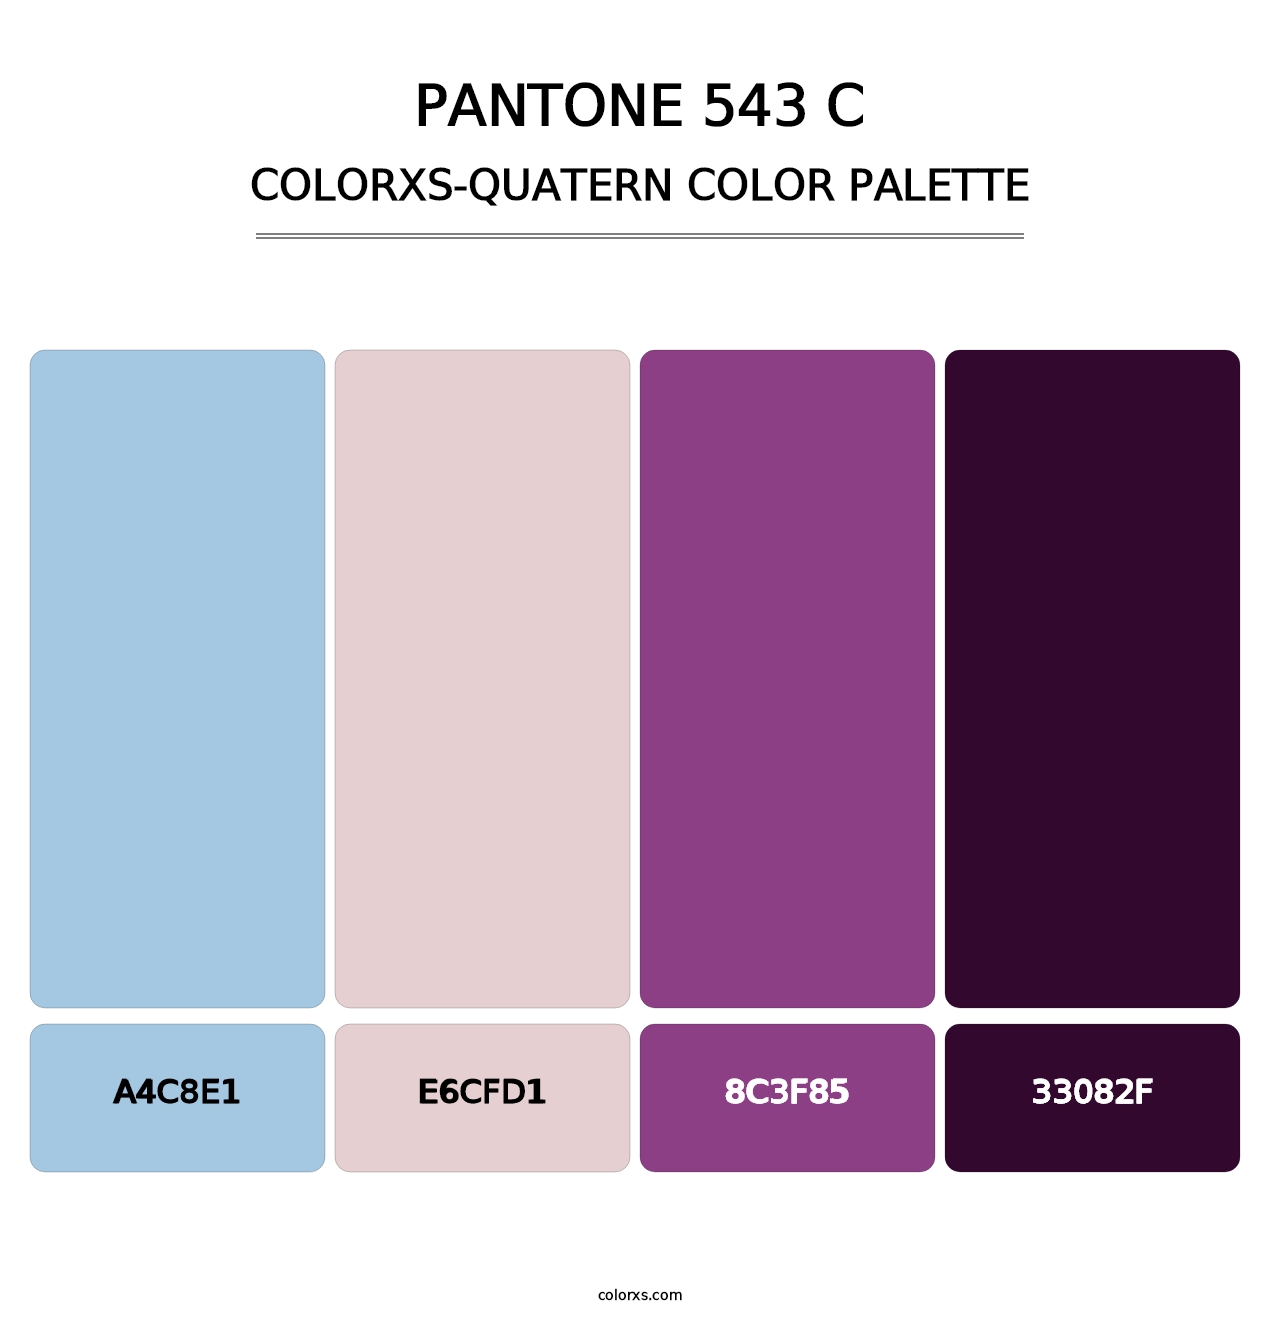 PANTONE 543 C - Colorxs Quatern Palette